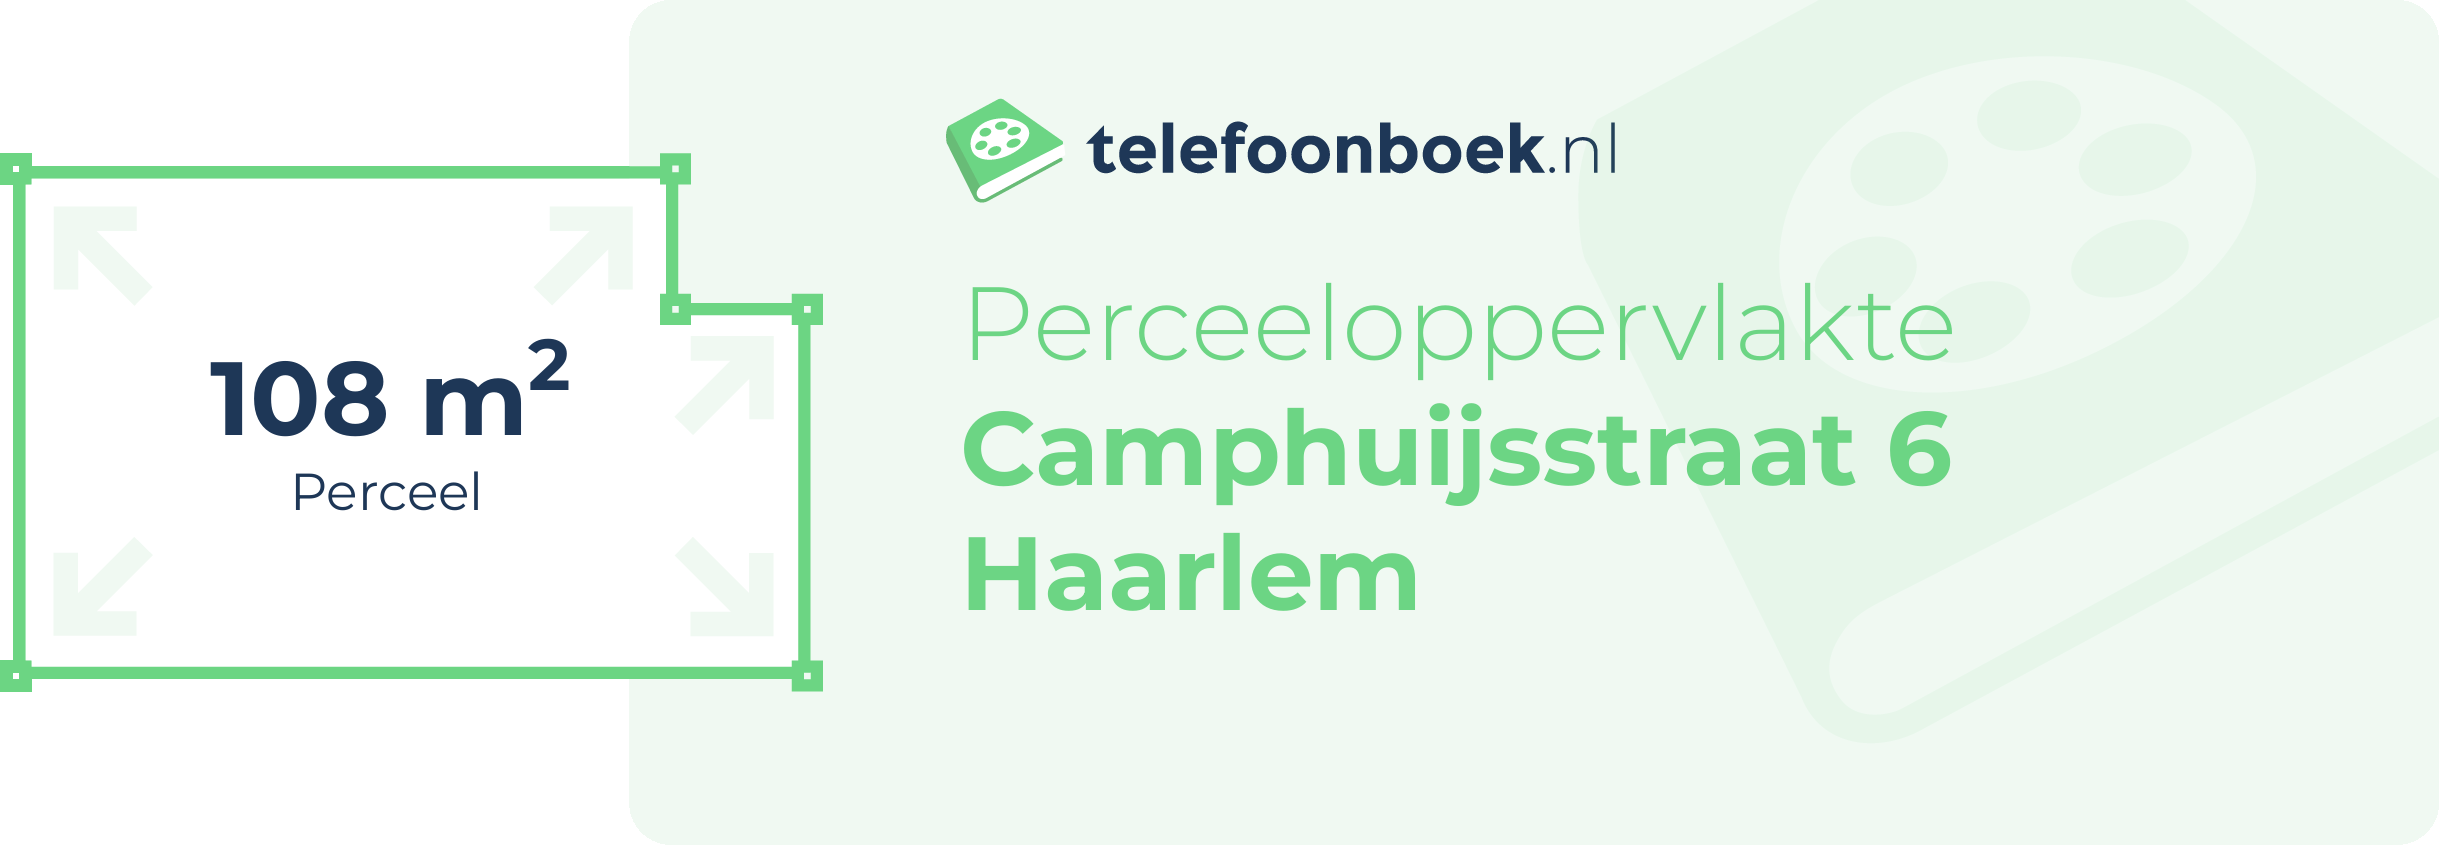 Perceeloppervlakte Camphuijsstraat 6 Haarlem